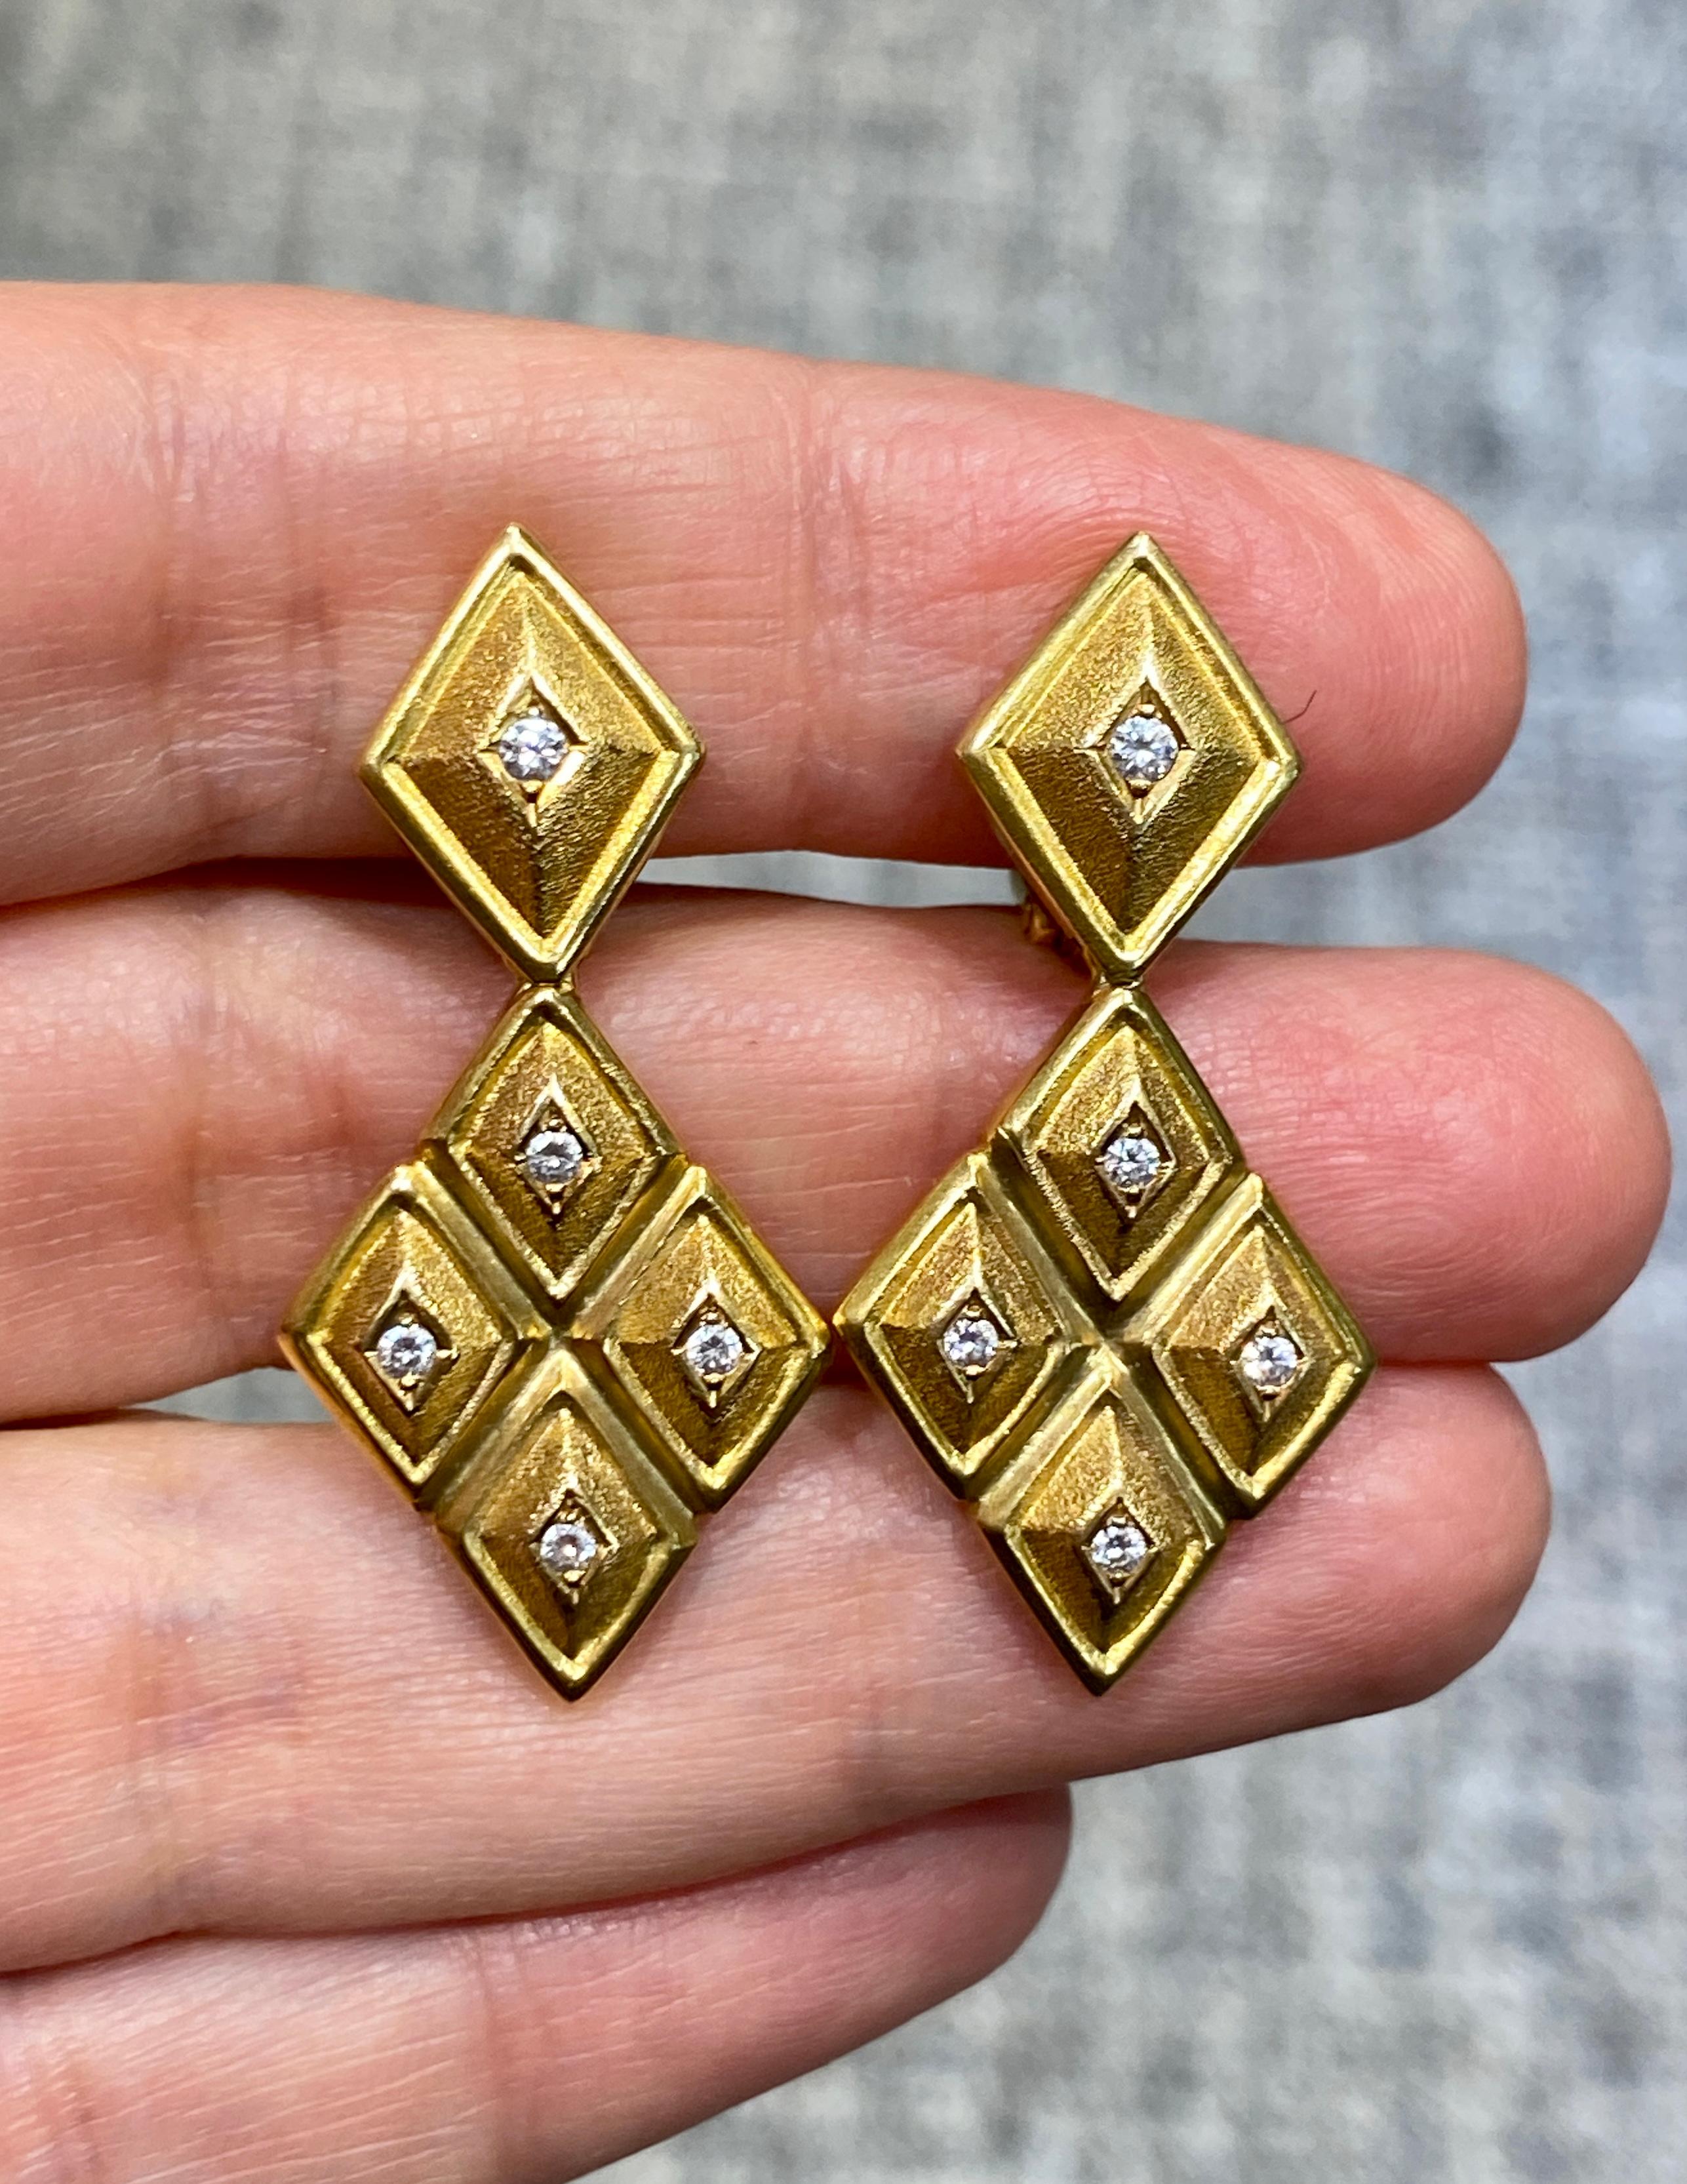 Diese auffälligen Lalaounis-Ohrringe sind aus 18 Karat Gelbgold gefertigt und mit kleinen Diamanten im Rundschliff verziert. Ursprünglich sind sie mit einem Clip versehen, aber ein Stift kann für zusätzliche Sicherheit leicht hinzugefügt werden.